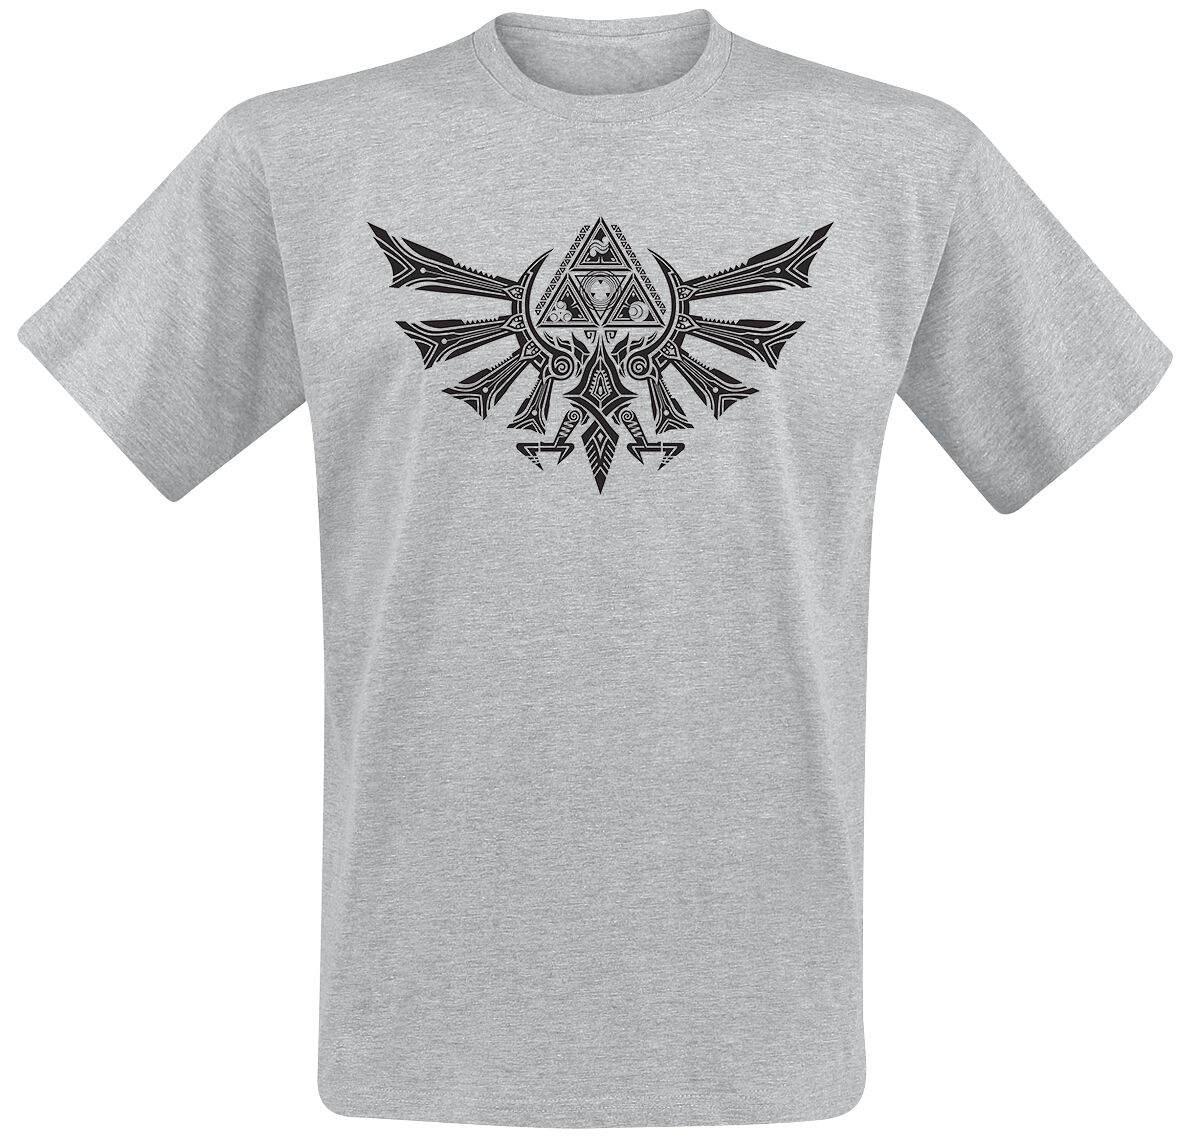 The Legend Of Zelda - Gaming T-Shirt - Hyrule Tribal - S bis XXL - für Männer - Größe XXL - grau meliert